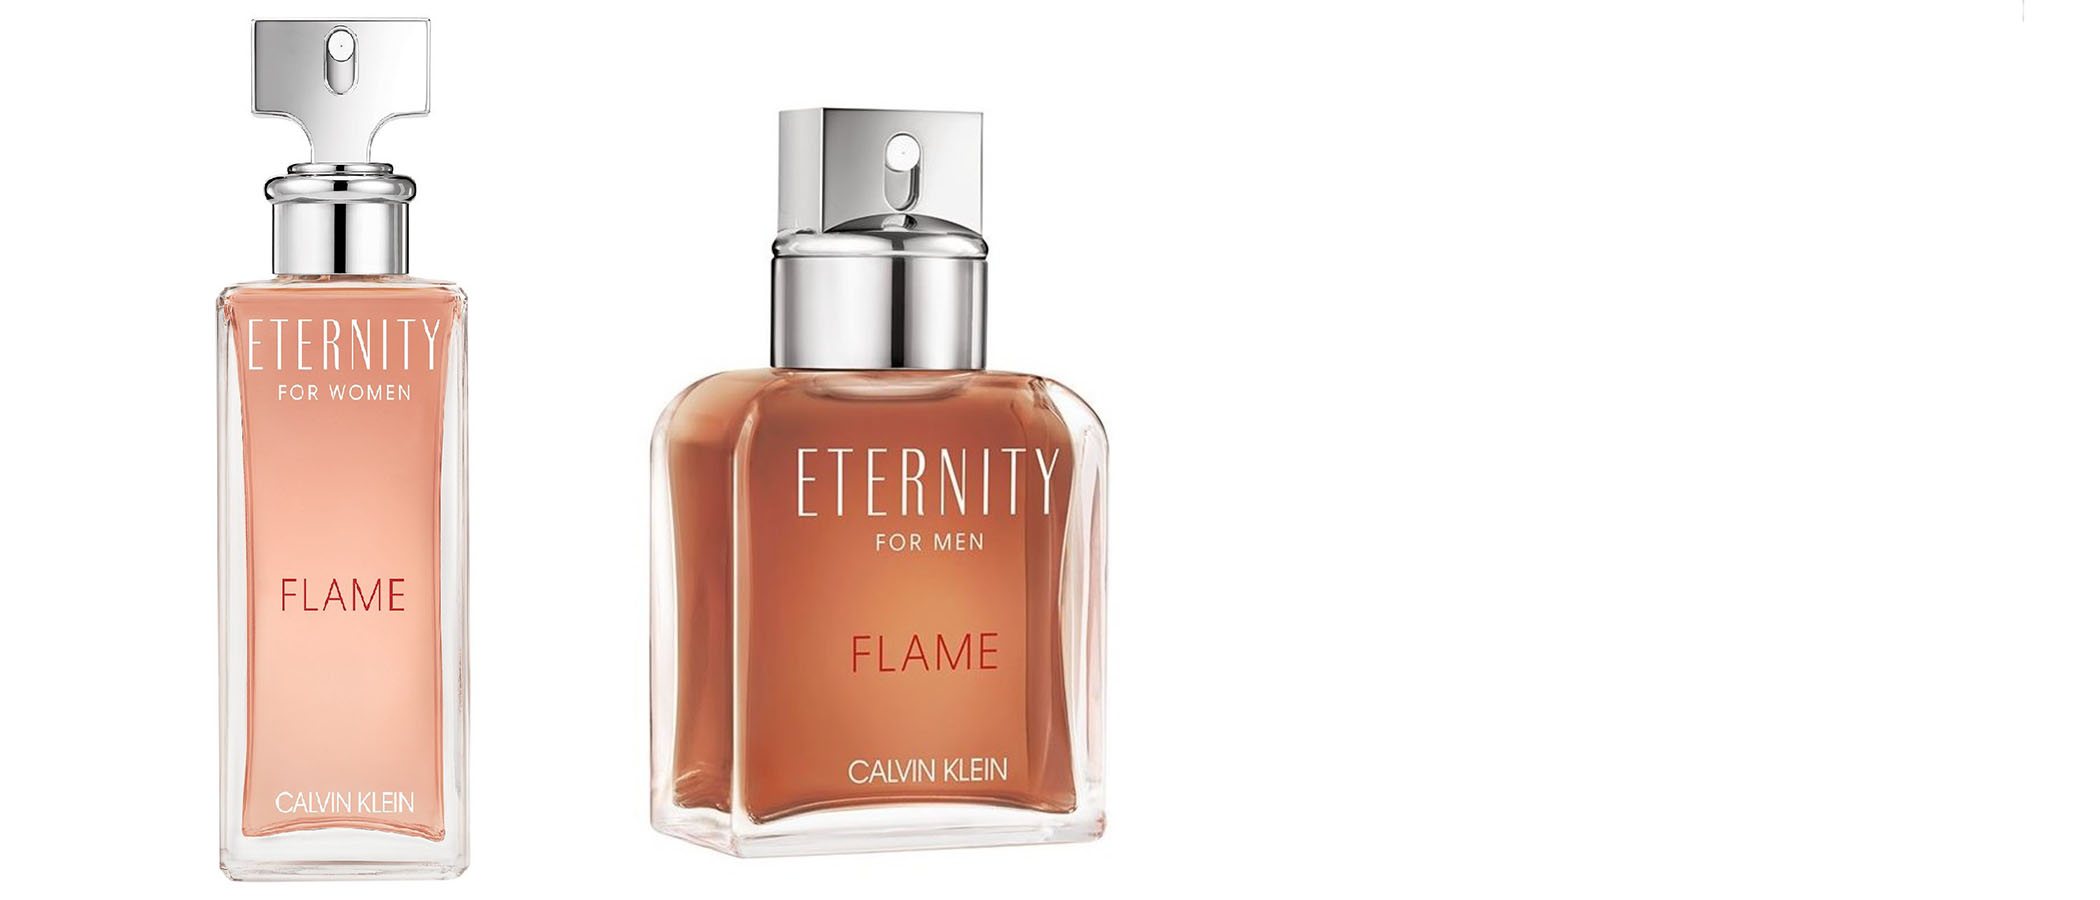 Calvin Klein presenta dos nuevas fragancias y en formato dúo de su línea 'Eternity'